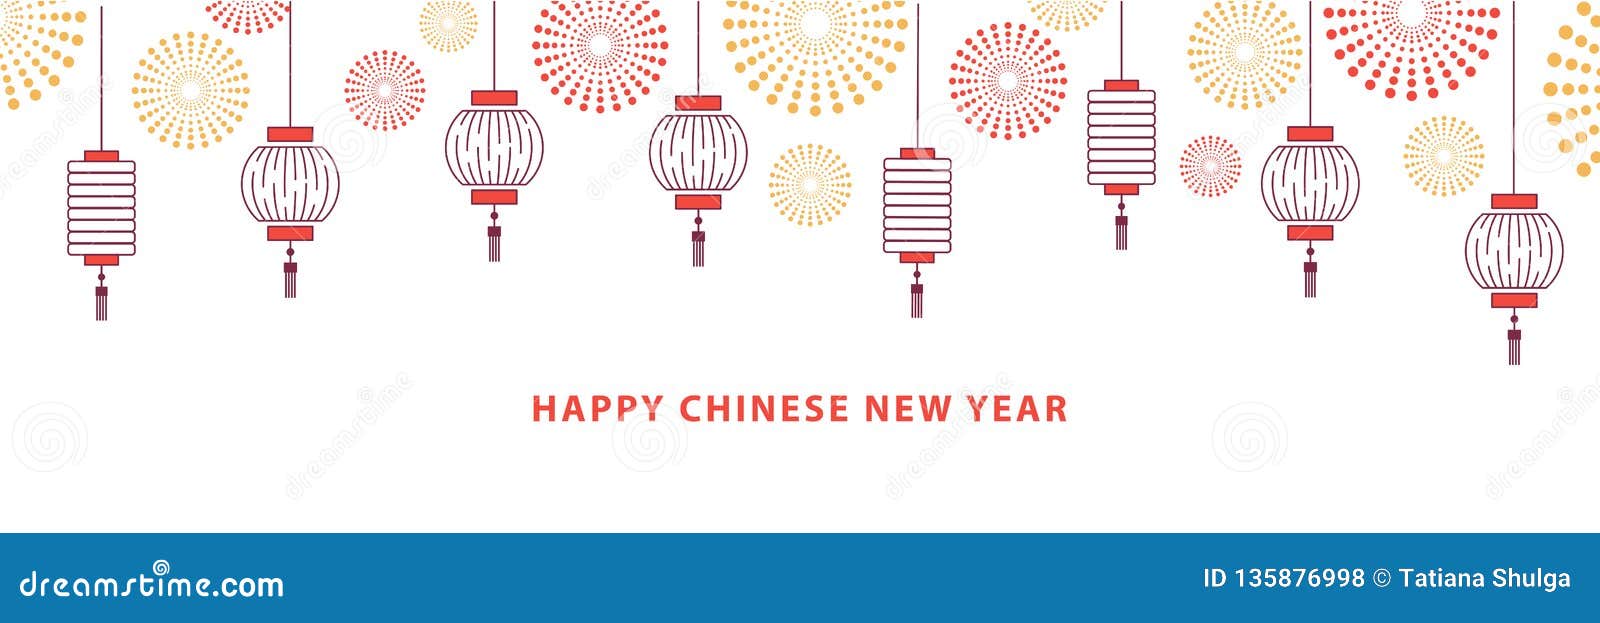 Nền tảng năm mới Trung Quốc - Với hình ảnh lễ hội đầy màu sắc, nền tảng năm mới Trung Quốc là nơi bạn có thể khám phá và tìm hiểu thêm về những phong tục truyền thống tuyệt vời của người Trung Quốc. Đón chào năm mới theo lối mòn của đất nước hoa mỹ này với những hình ảnh ấn tượng đầy lôi cuốn.